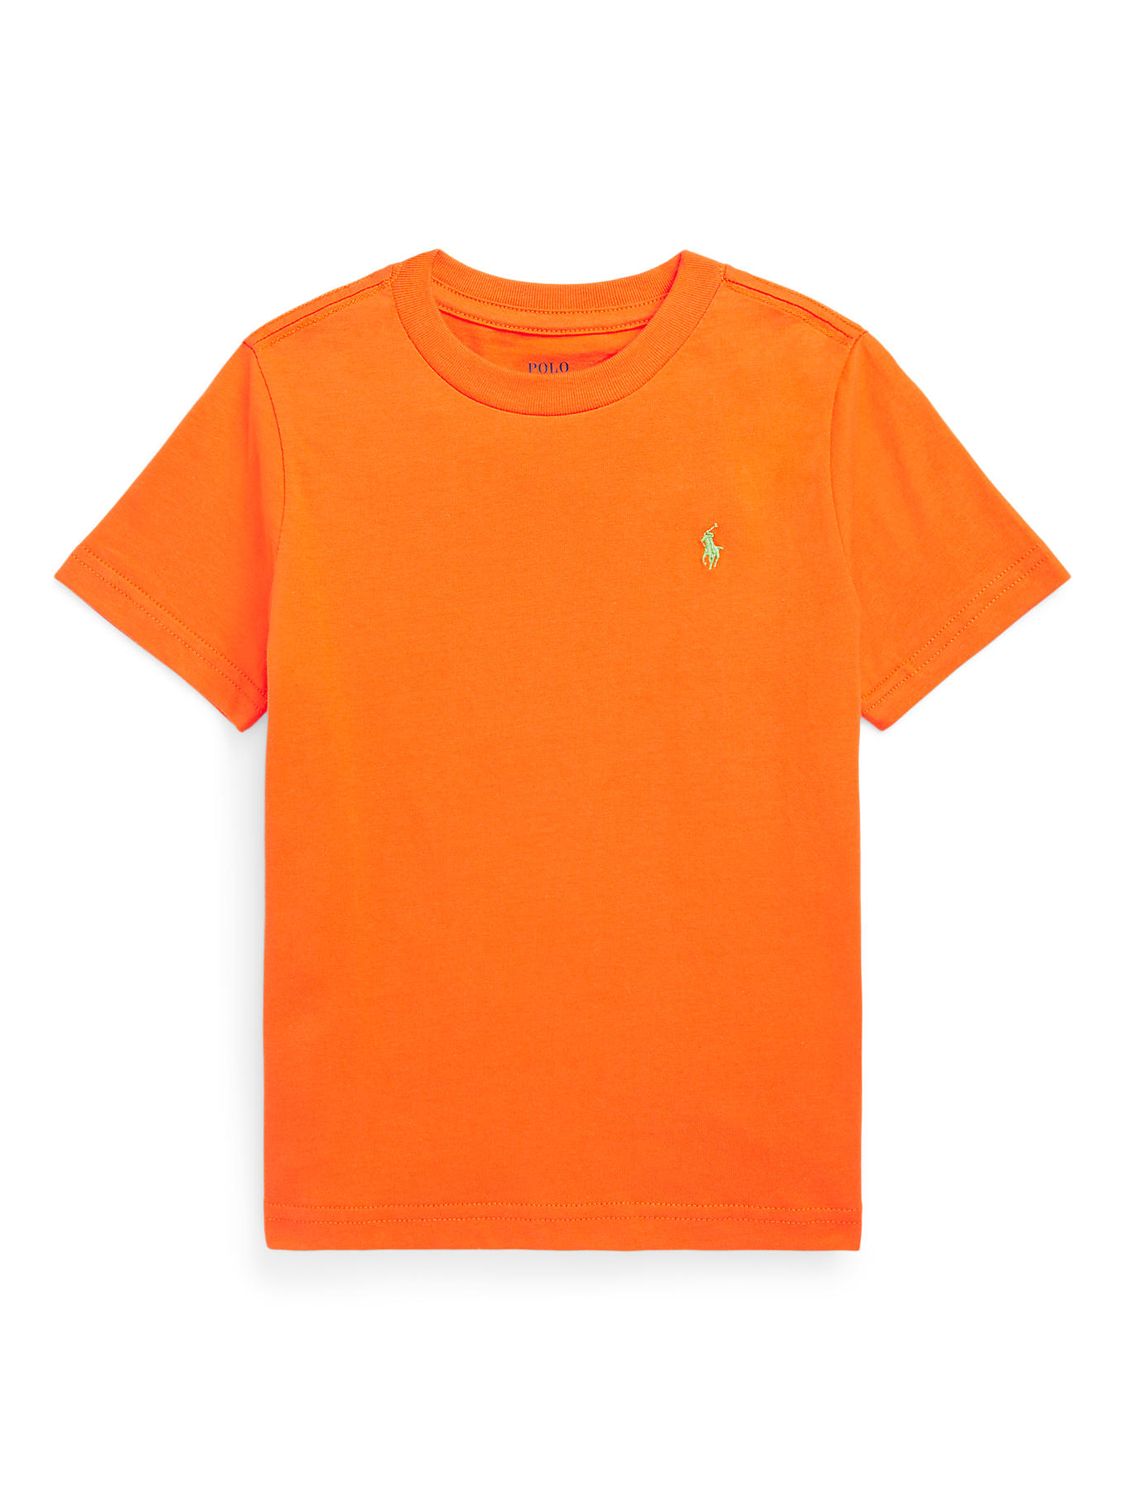 Polo Ralph Lauren Kids' Logo T-Shirt, Resort Orange at John Lewis & Partners